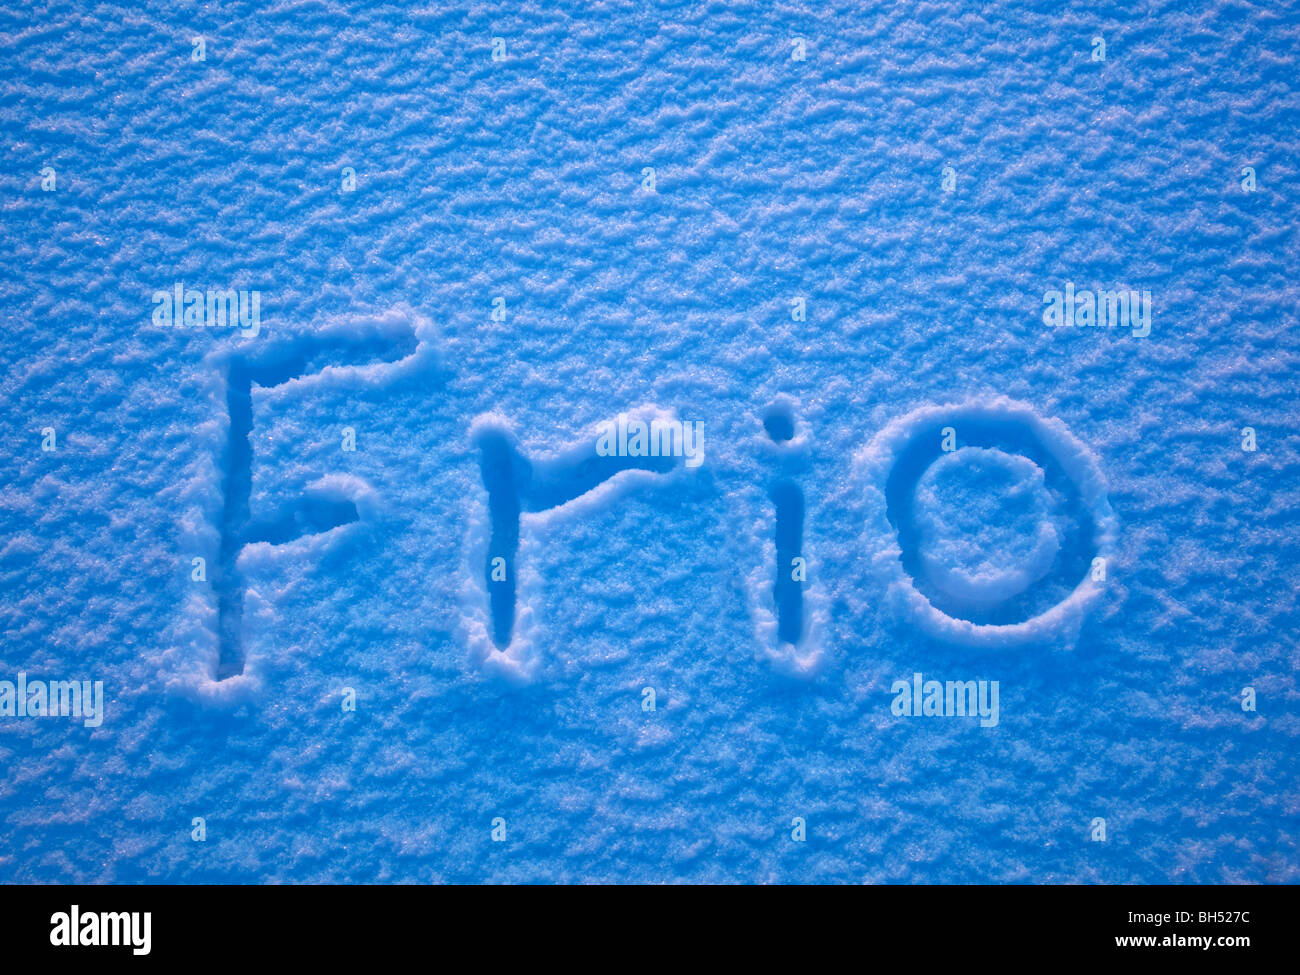 das spanische Wort für Kälte - Frio - ausgeschrieben im Schnee Stockfoto